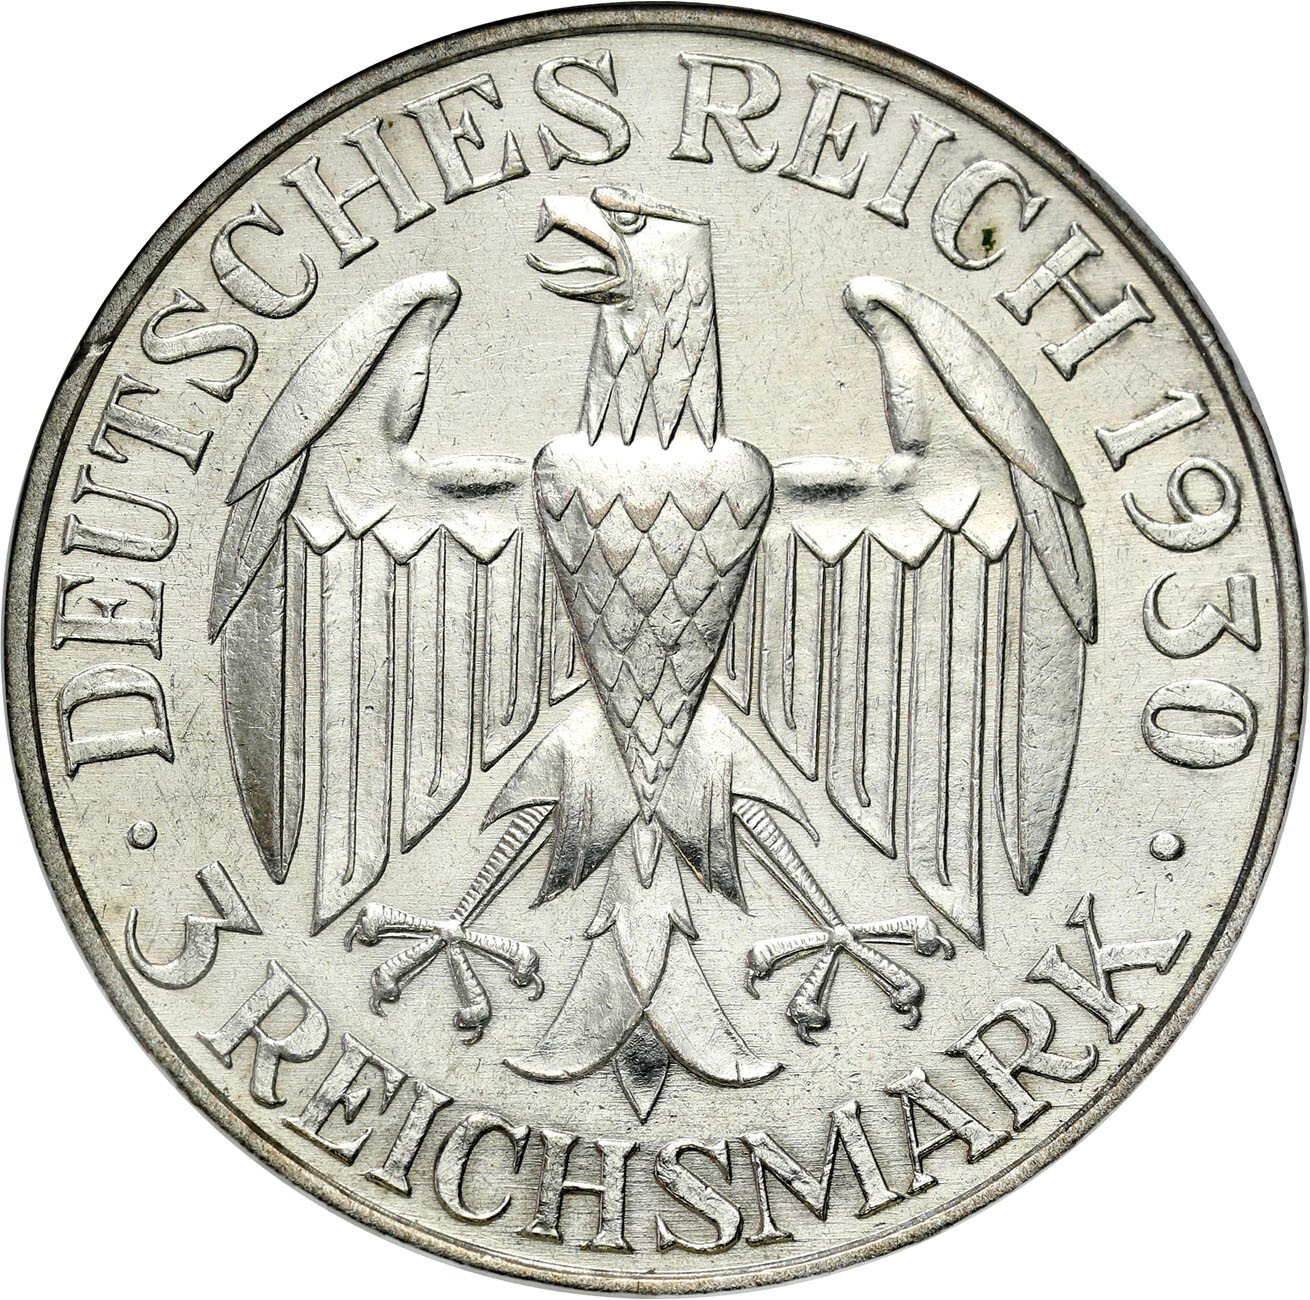 Niemcy, Weimar. 3 marki 1930 A, Berlin – Zeppelin